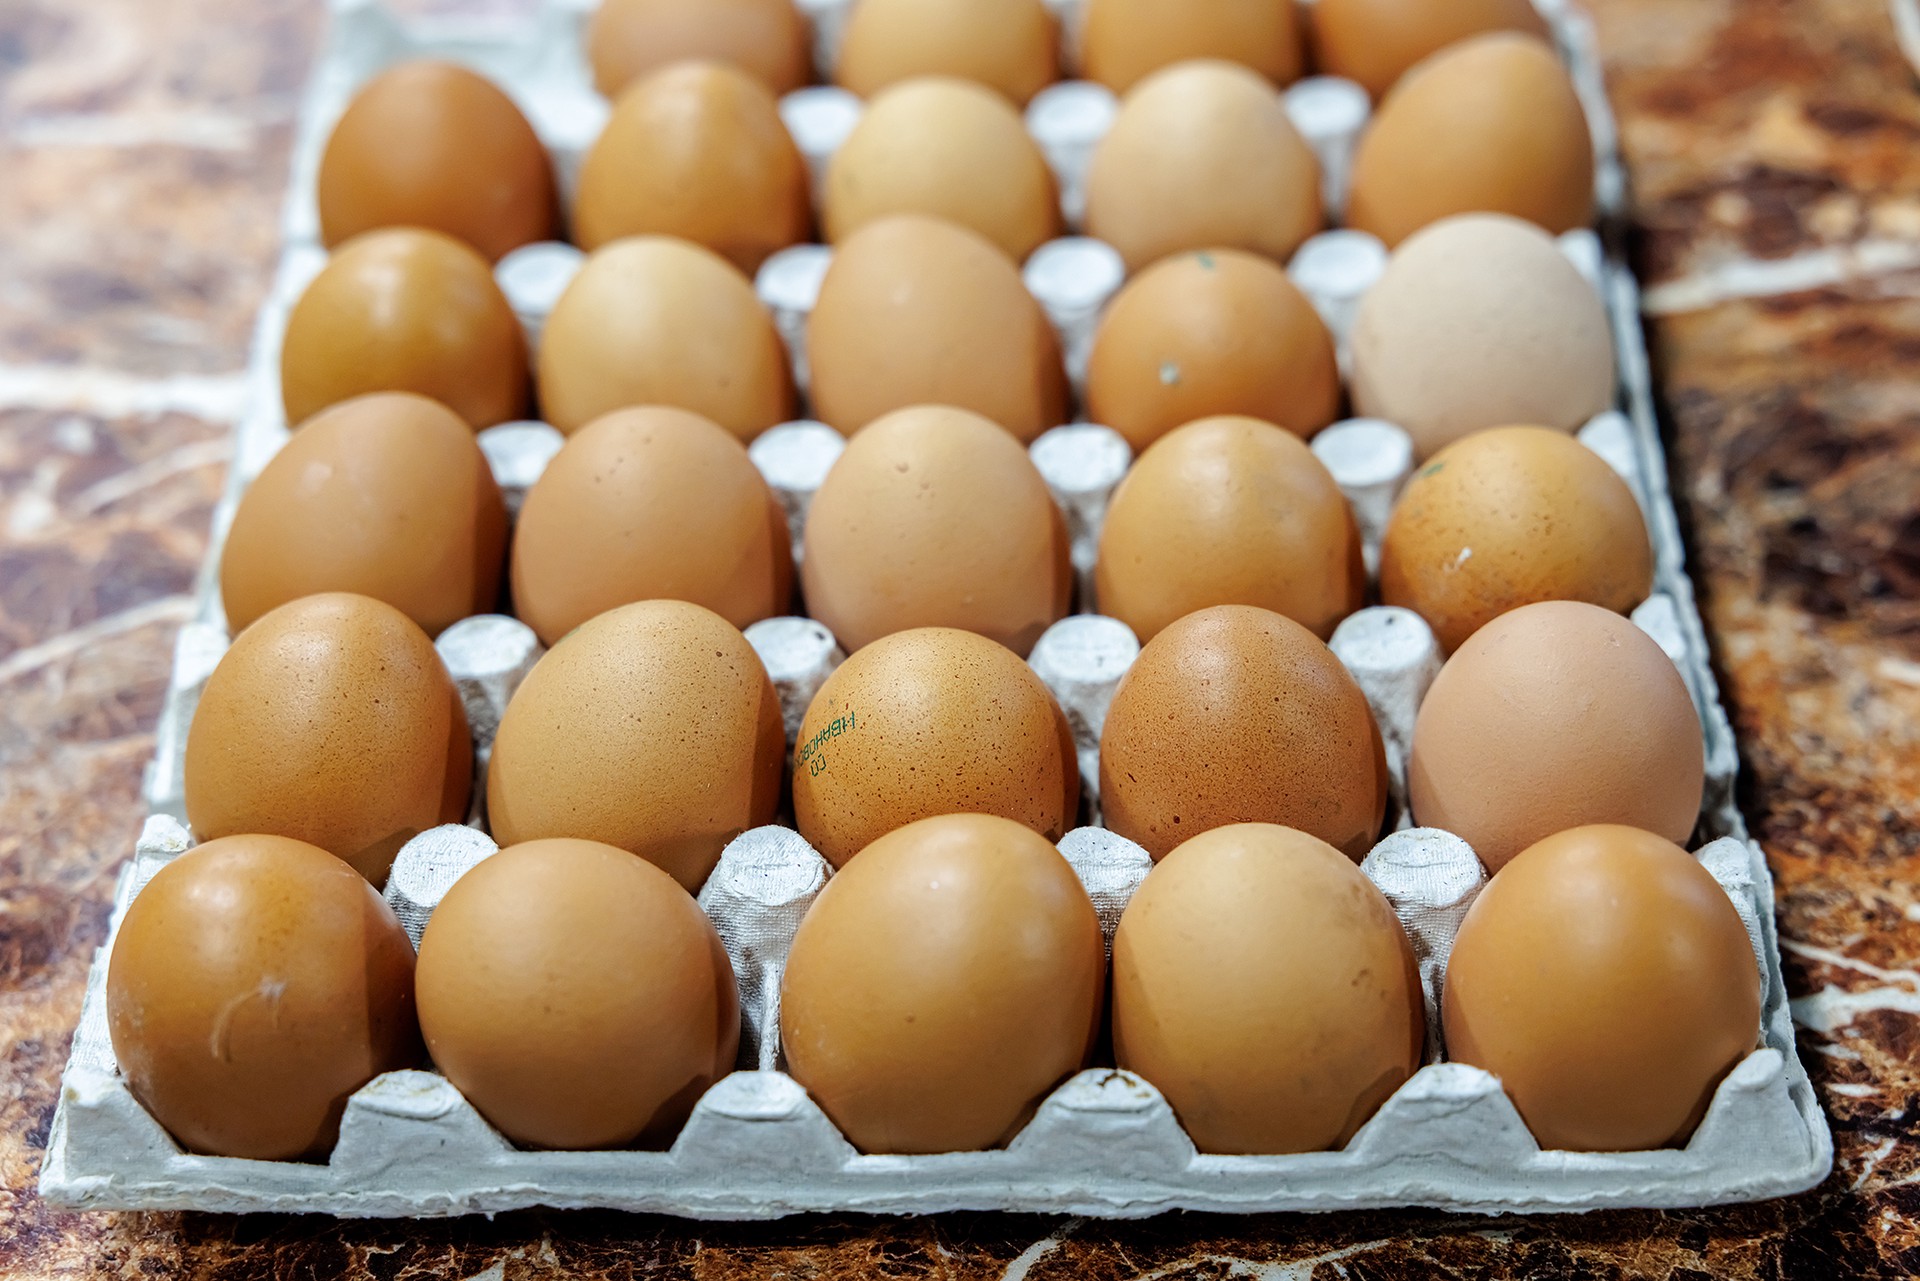 ФАС возбудила четыре дела в отношении производителей куриных яиц из-за роста цен